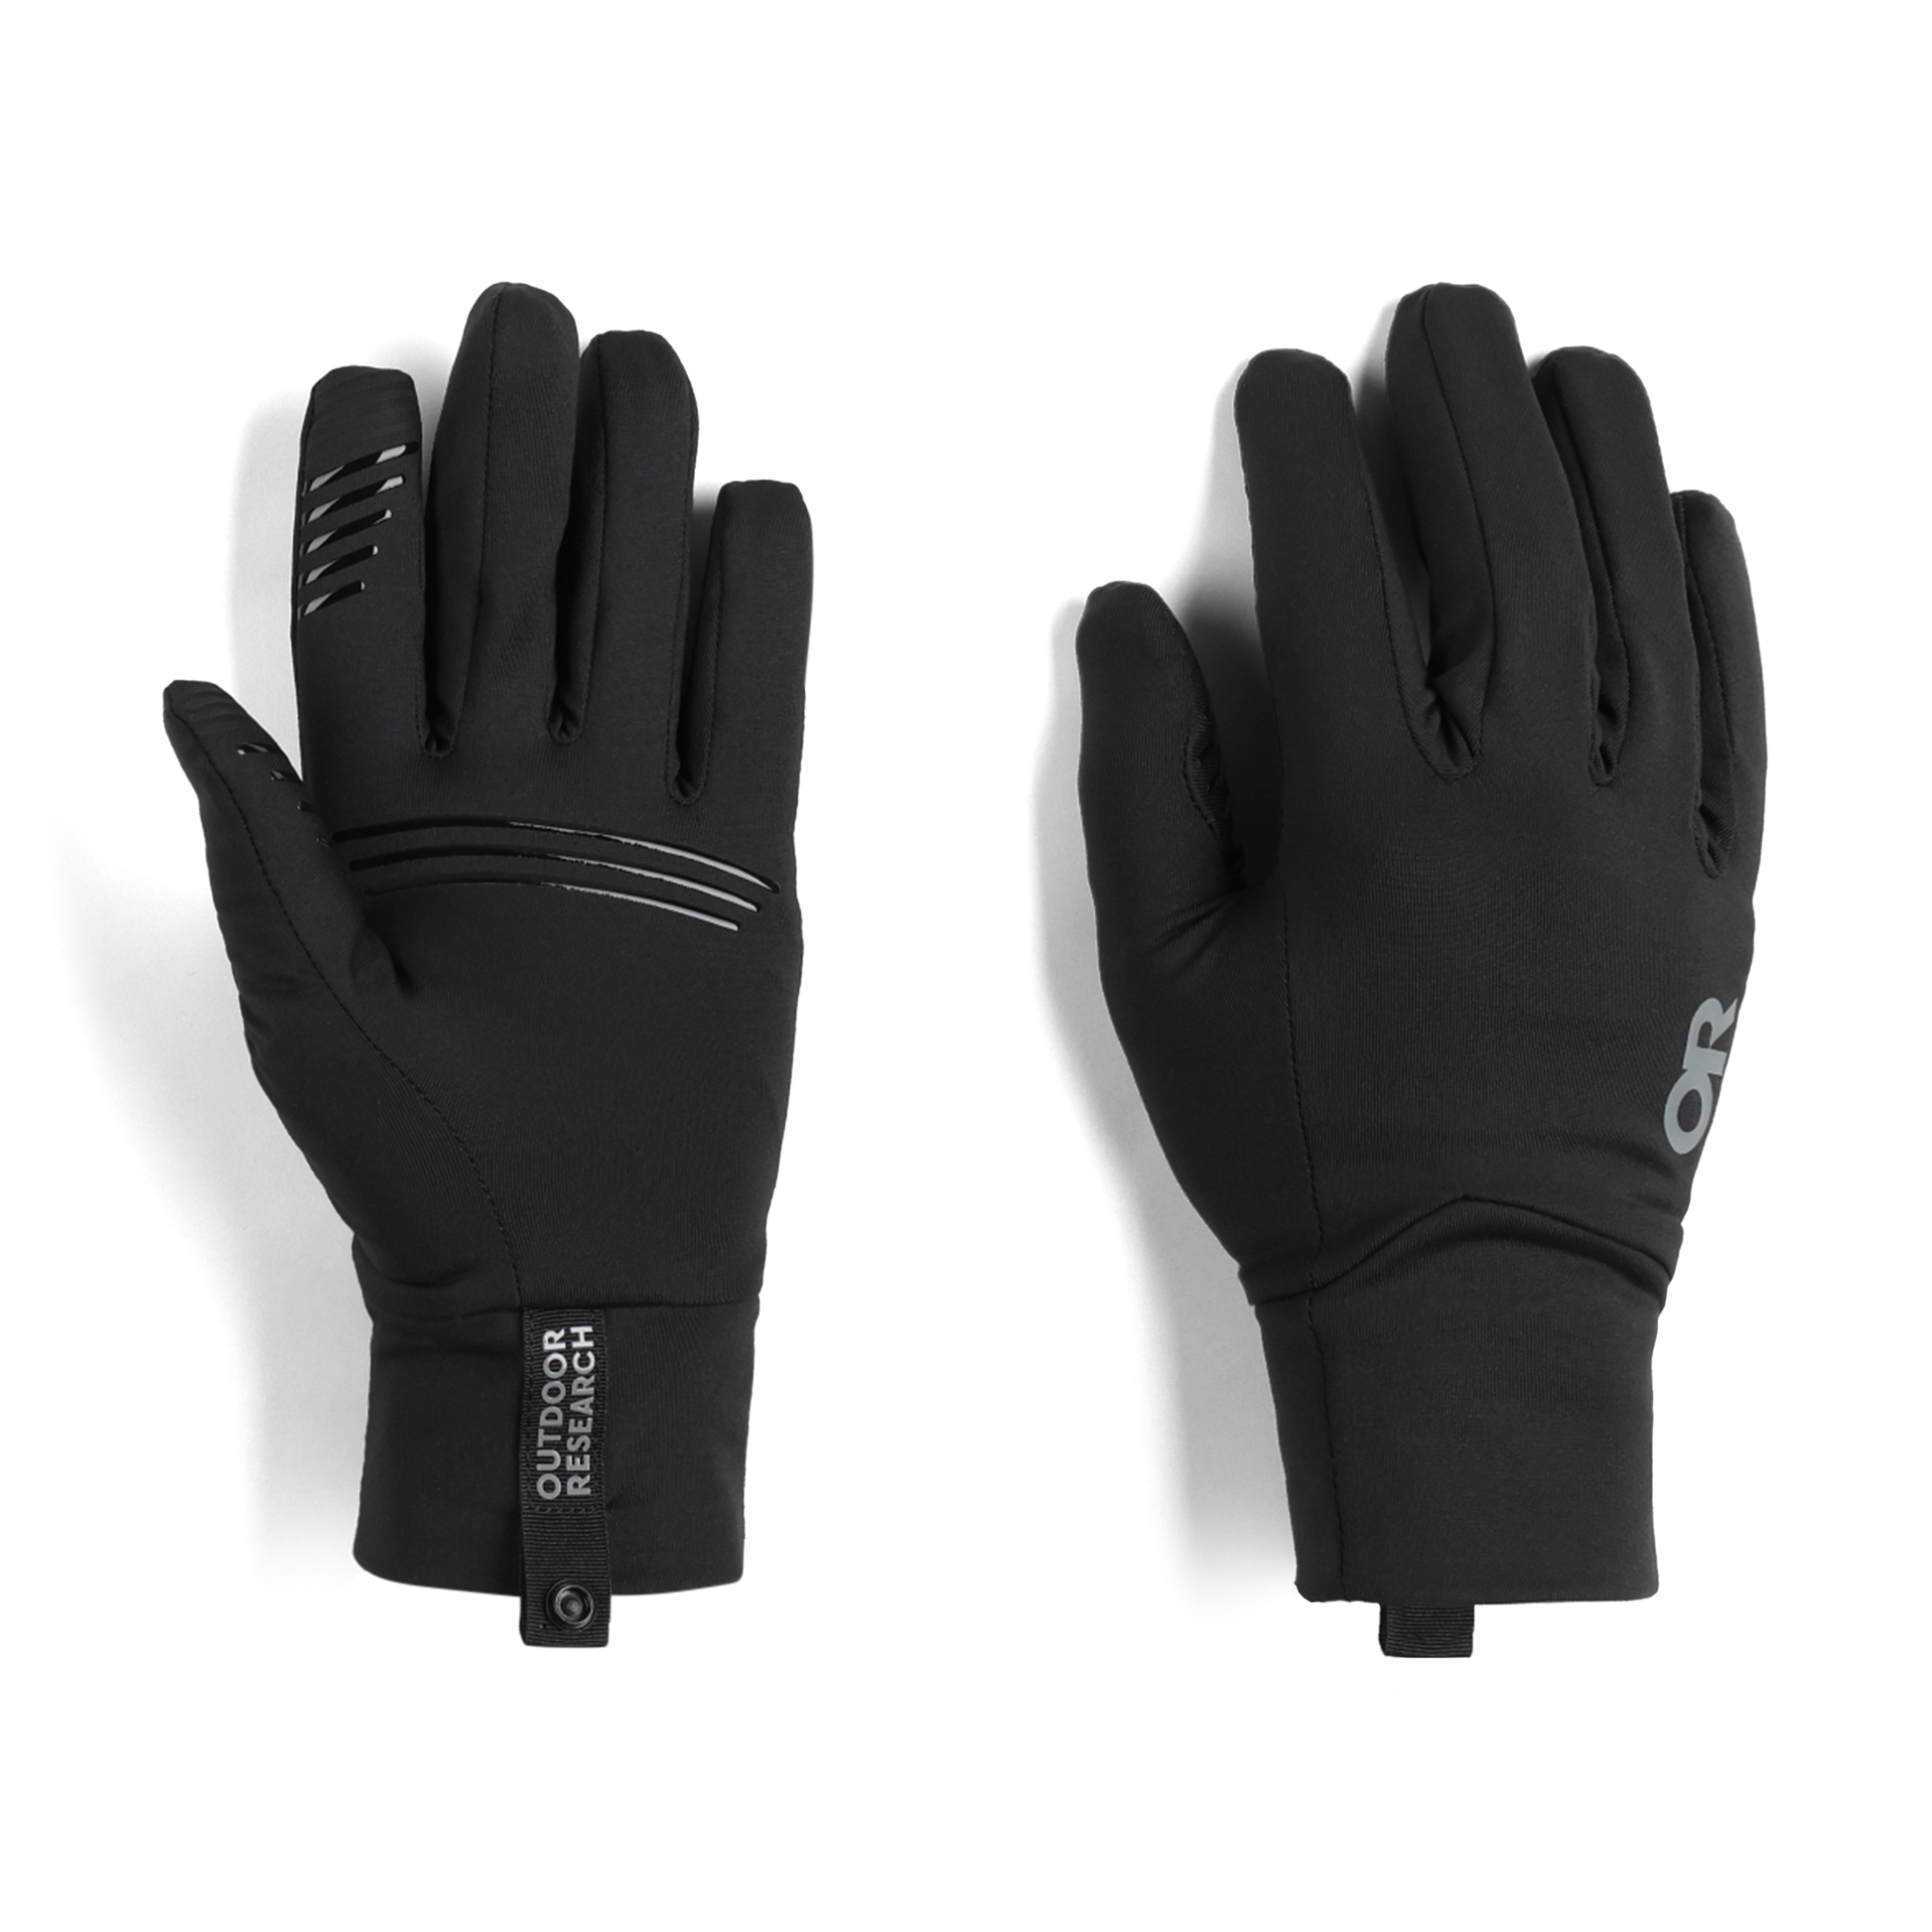 Outdoor Research Vigor Lightweight Sensor Gloves Men's, Black / XL